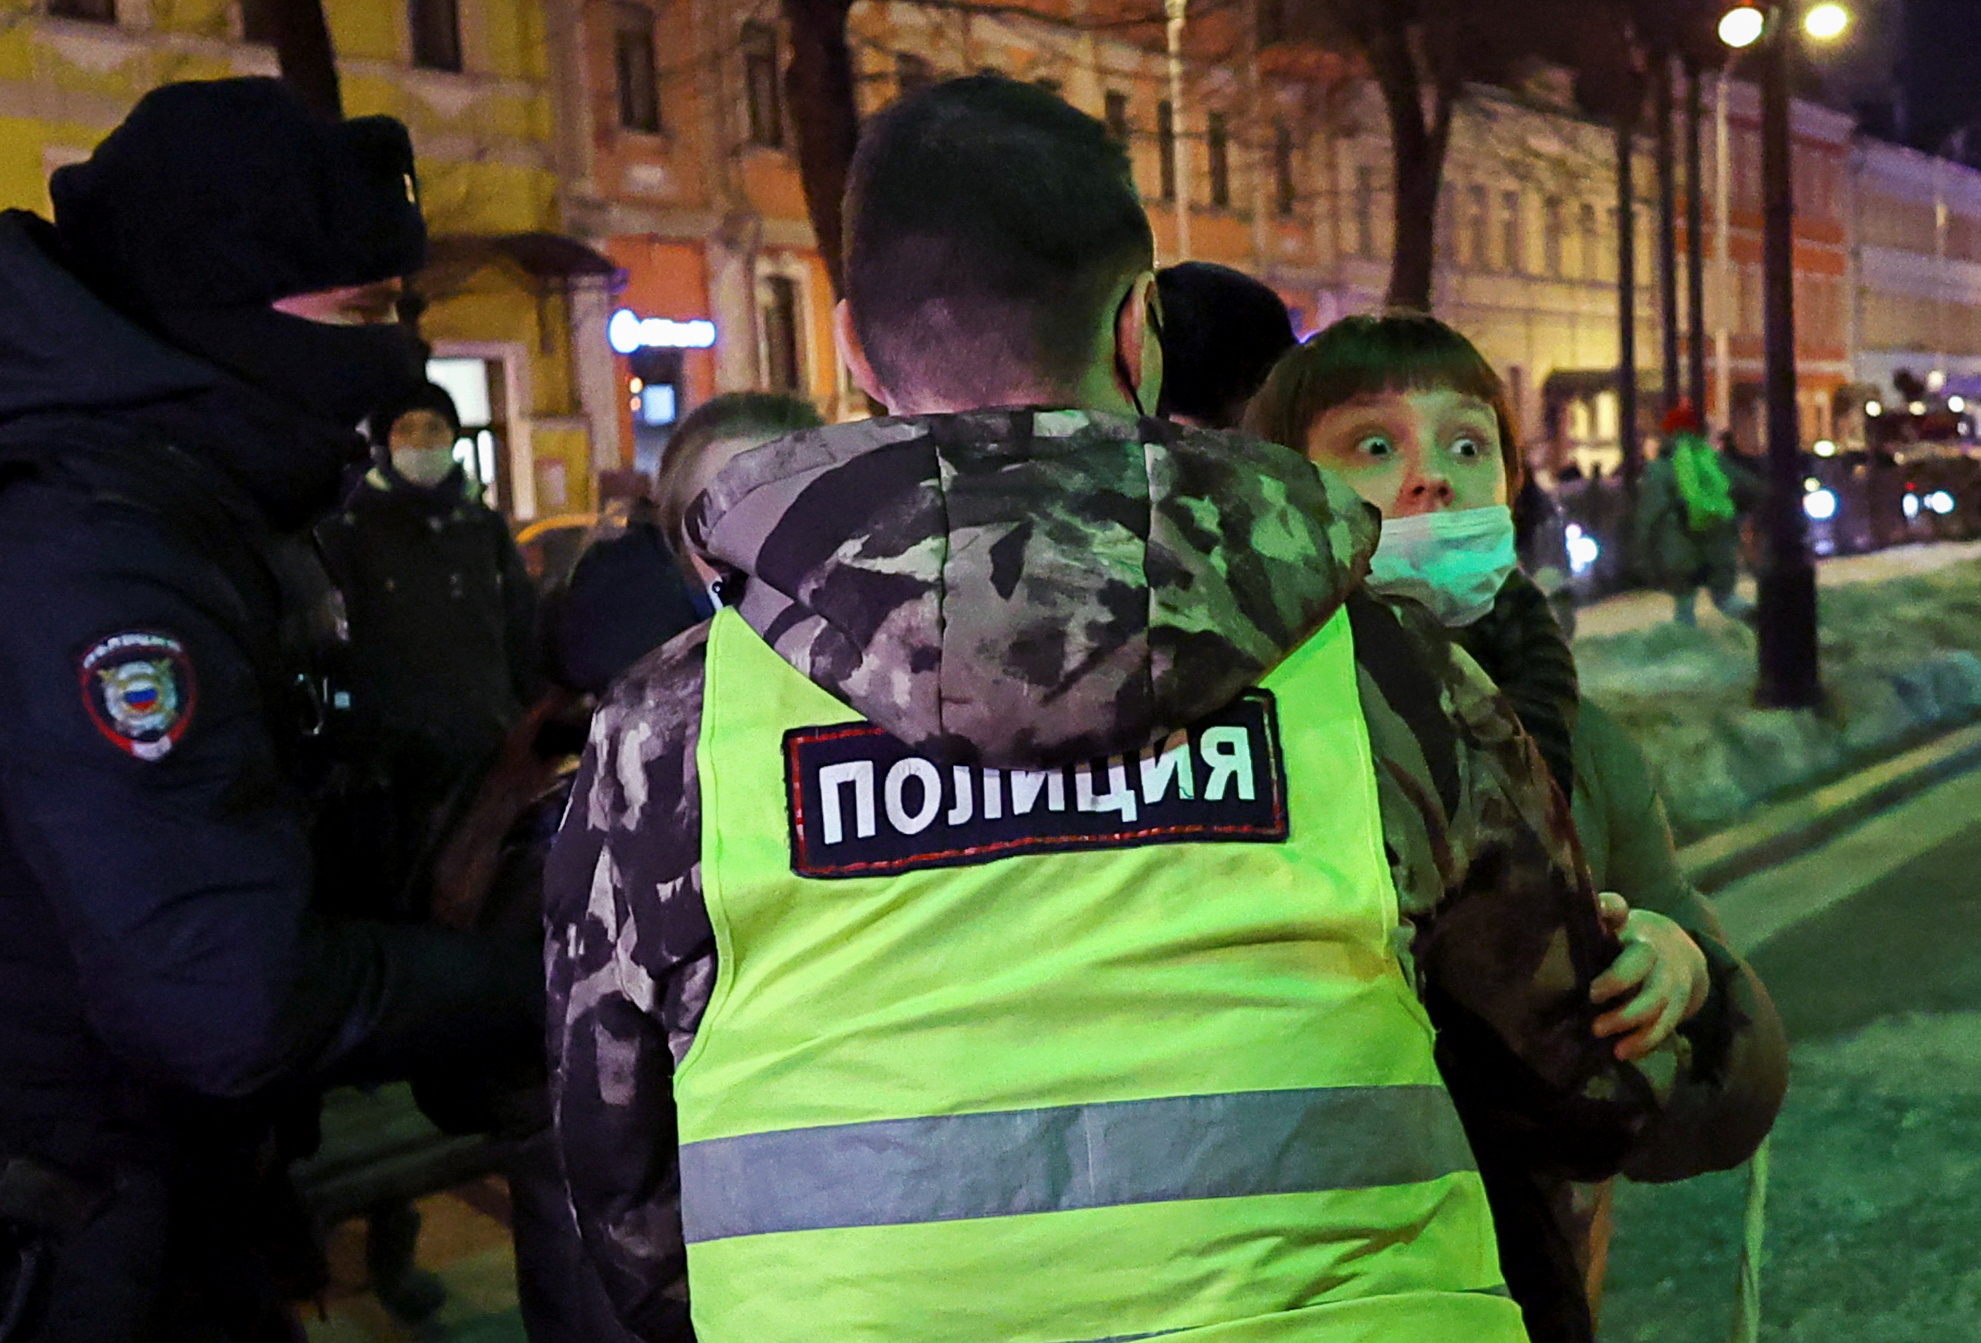 Полиция задерживает человека во время антивоенной акции в Москве. Фото EVGENIA NOVOZHENINA / TASS / Scanpix / Leta